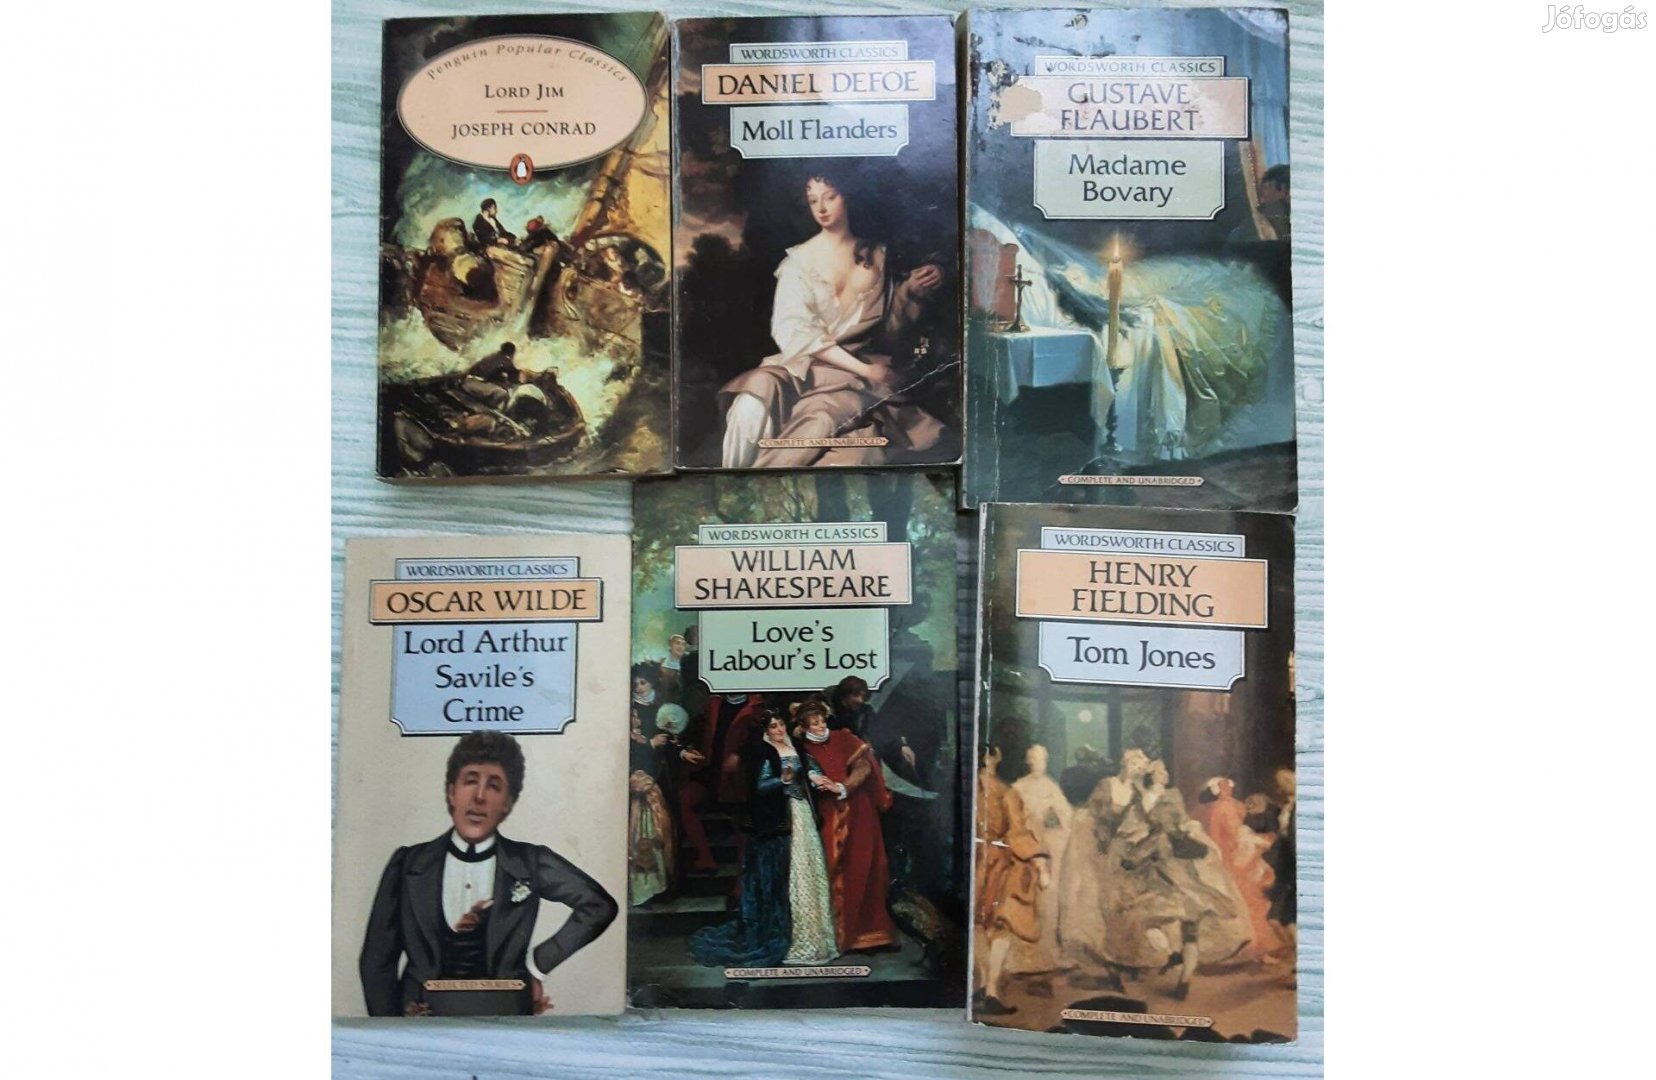 Wordsworth angol nyelvű klasszikusok könyvcsomag (Shakespeare, Wilde)